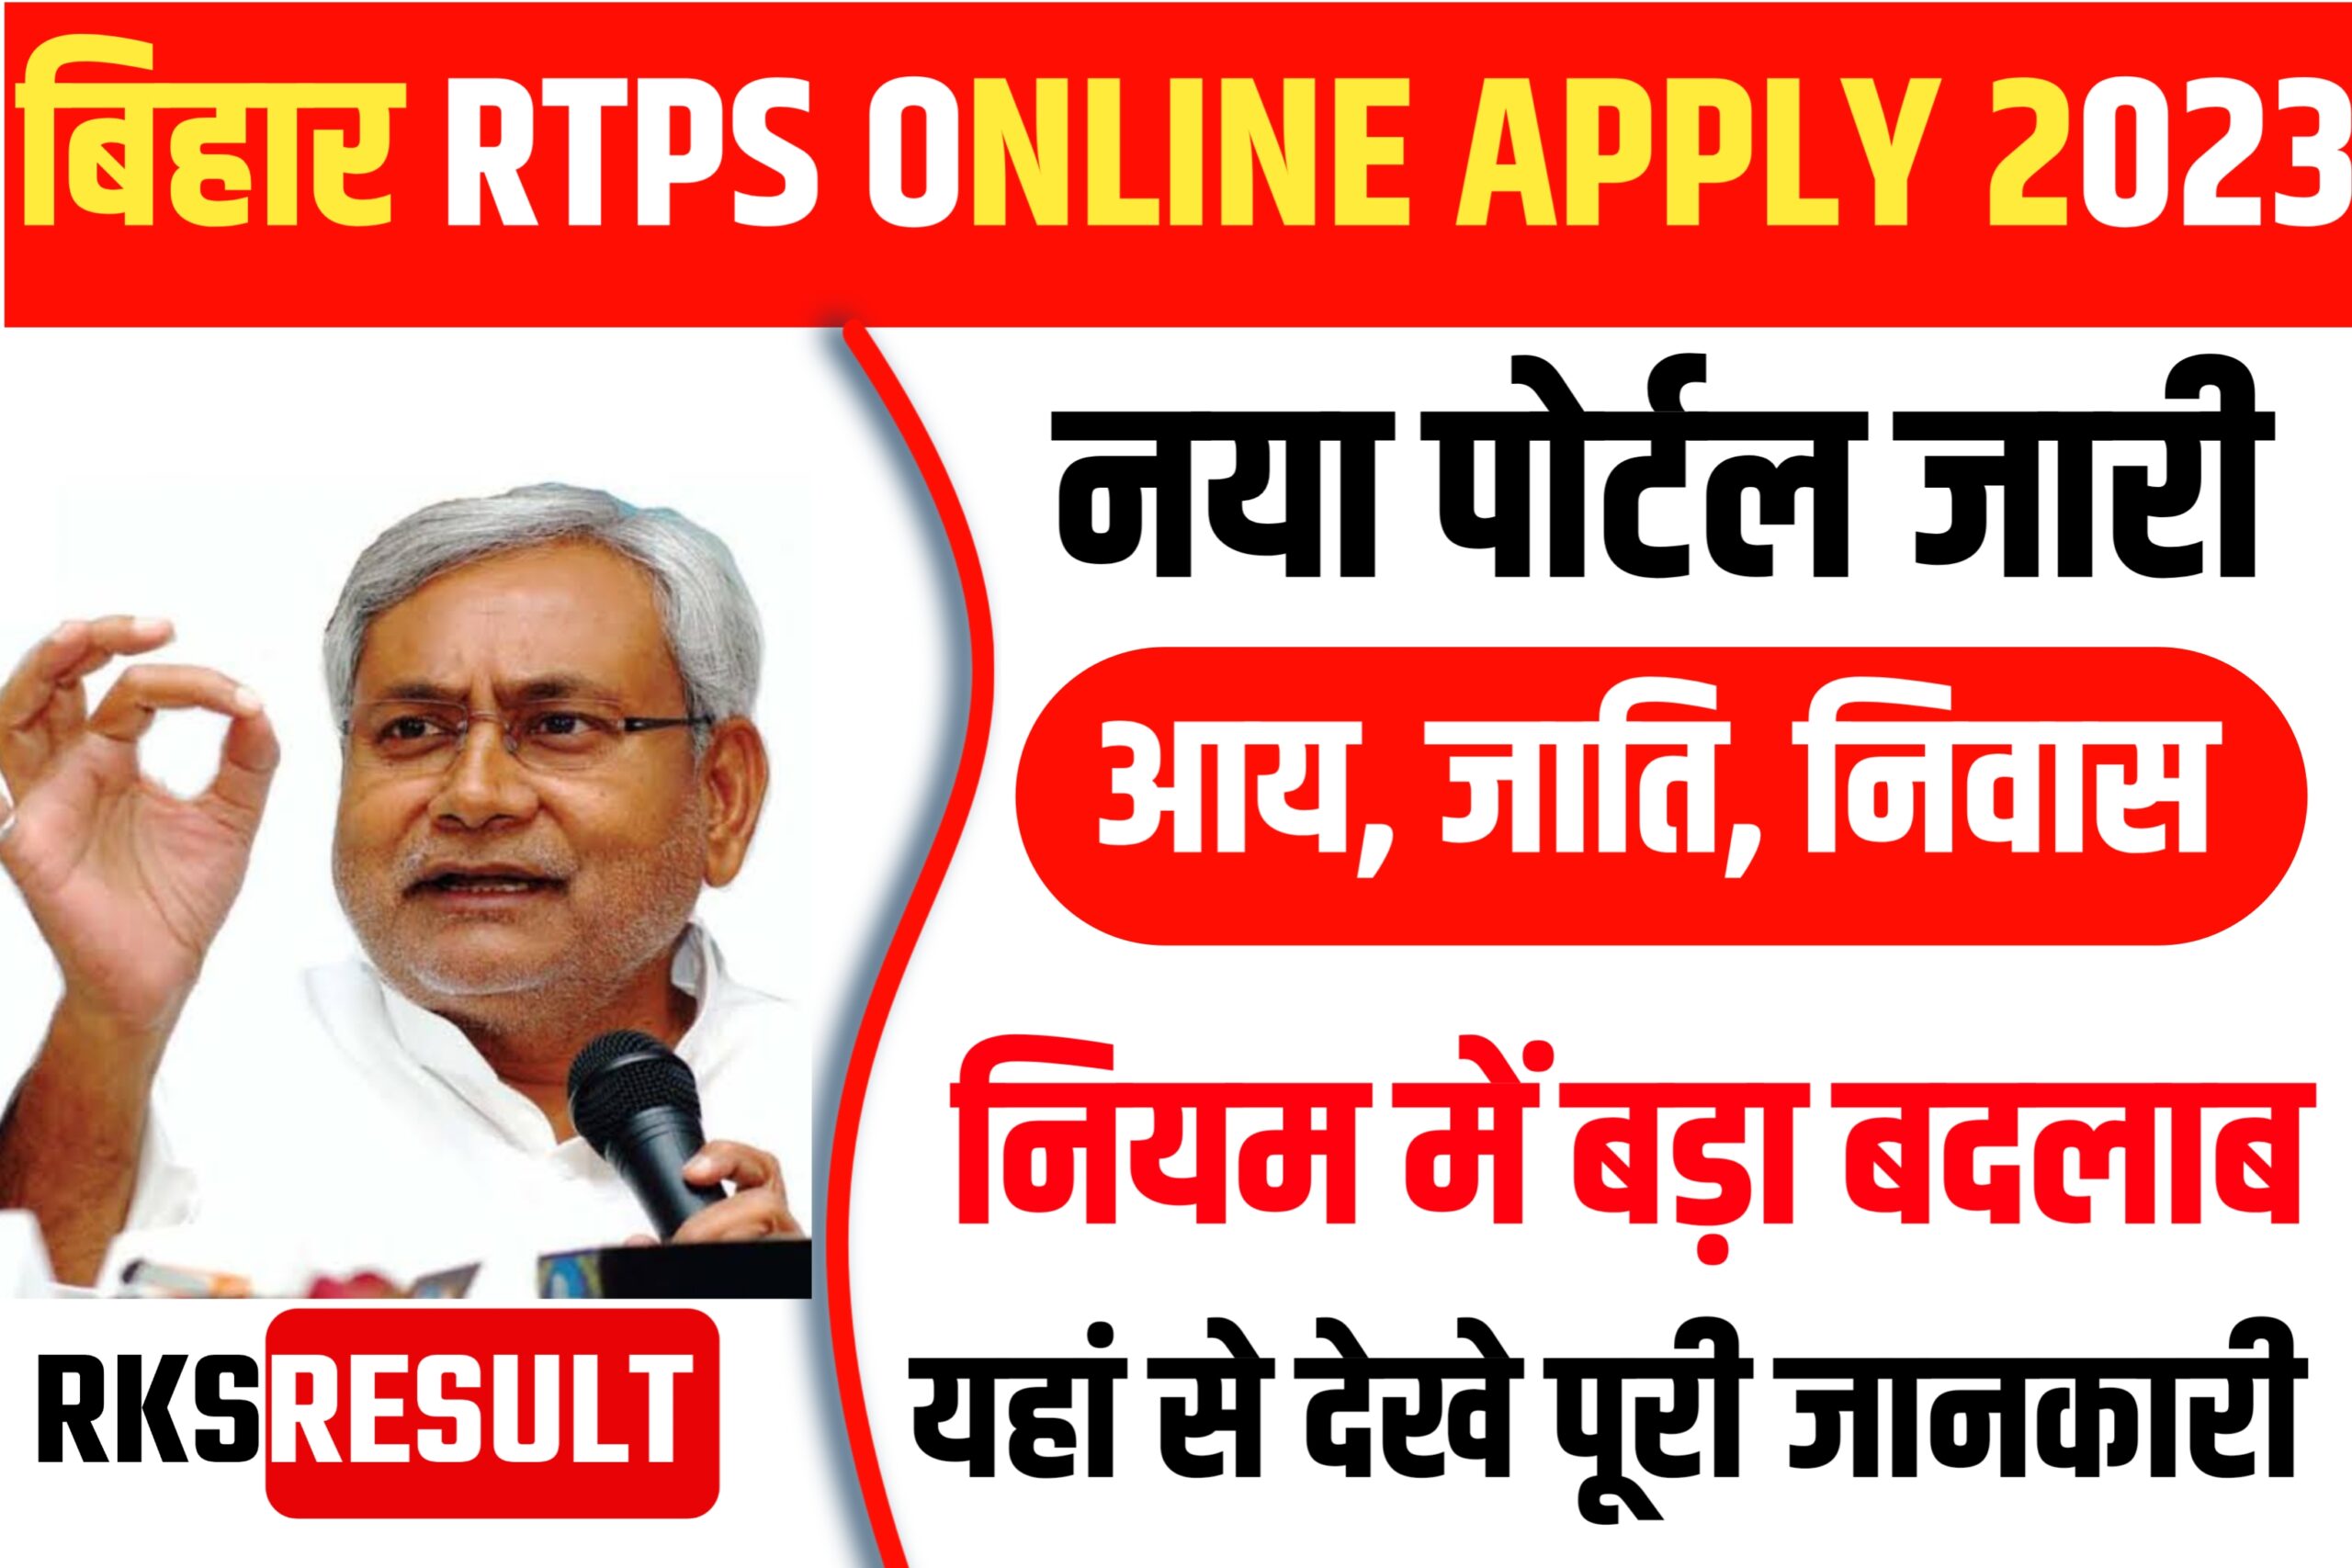 Bihar RTPS APPLY ONLINE 2023